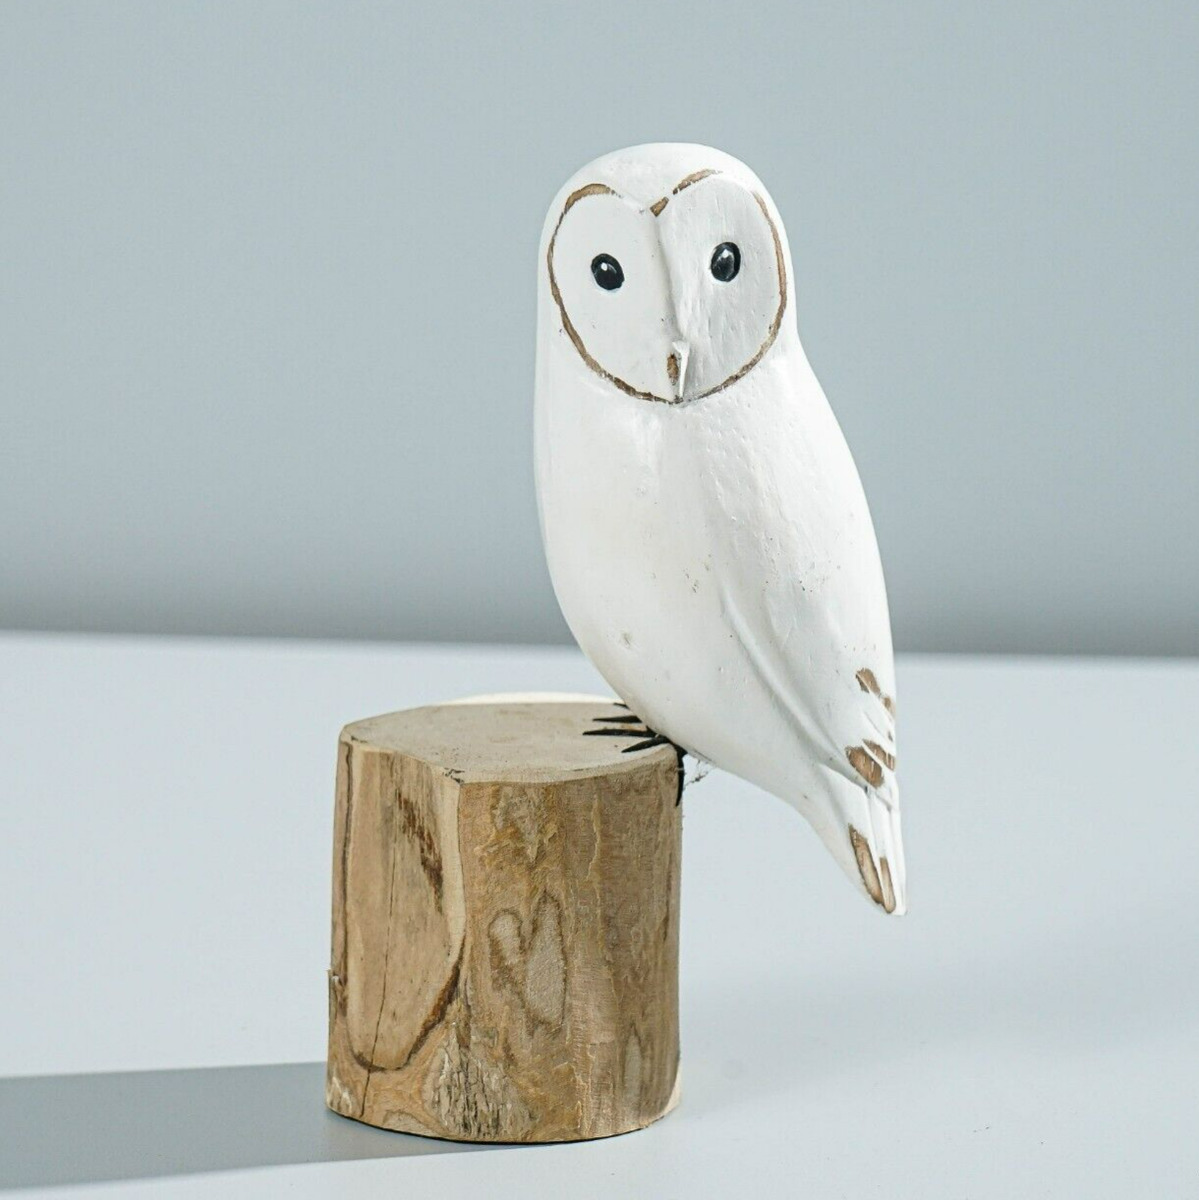 Snow owl art hand carved statue wooden bird art sculpture painted bird gift